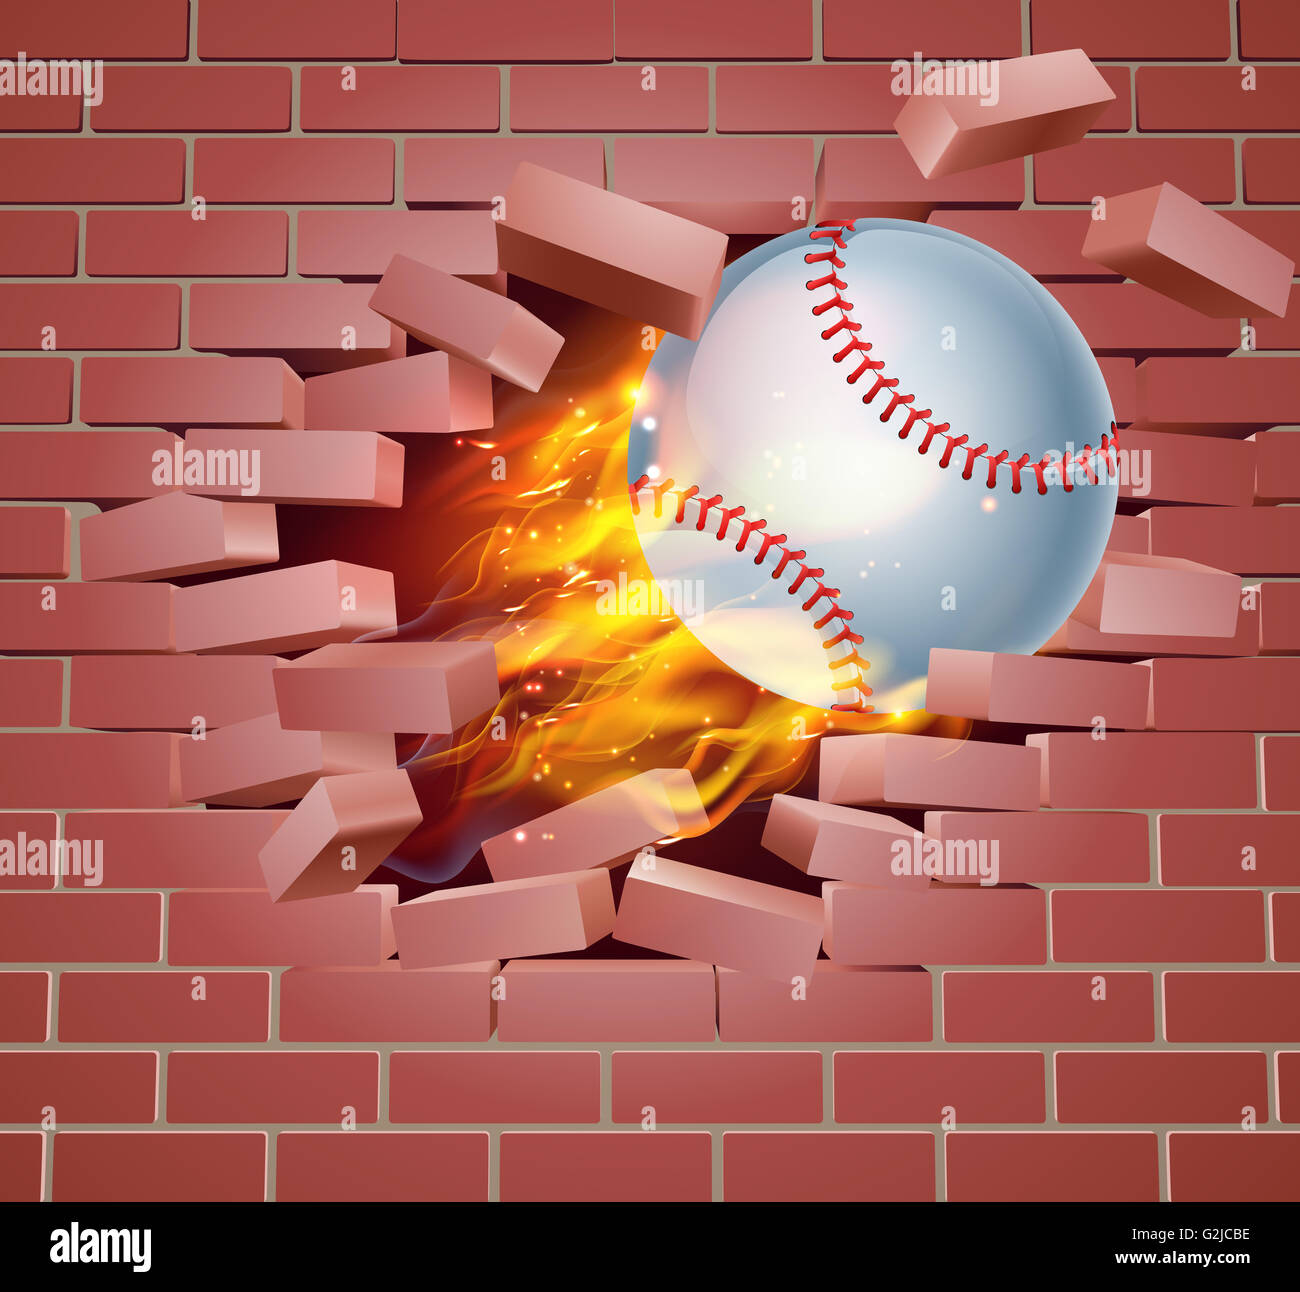 Ein Beispiel für einen brennenden flaming Baseball Ball auf Feuer reißen ein Loch durch die Wand Stockfoto